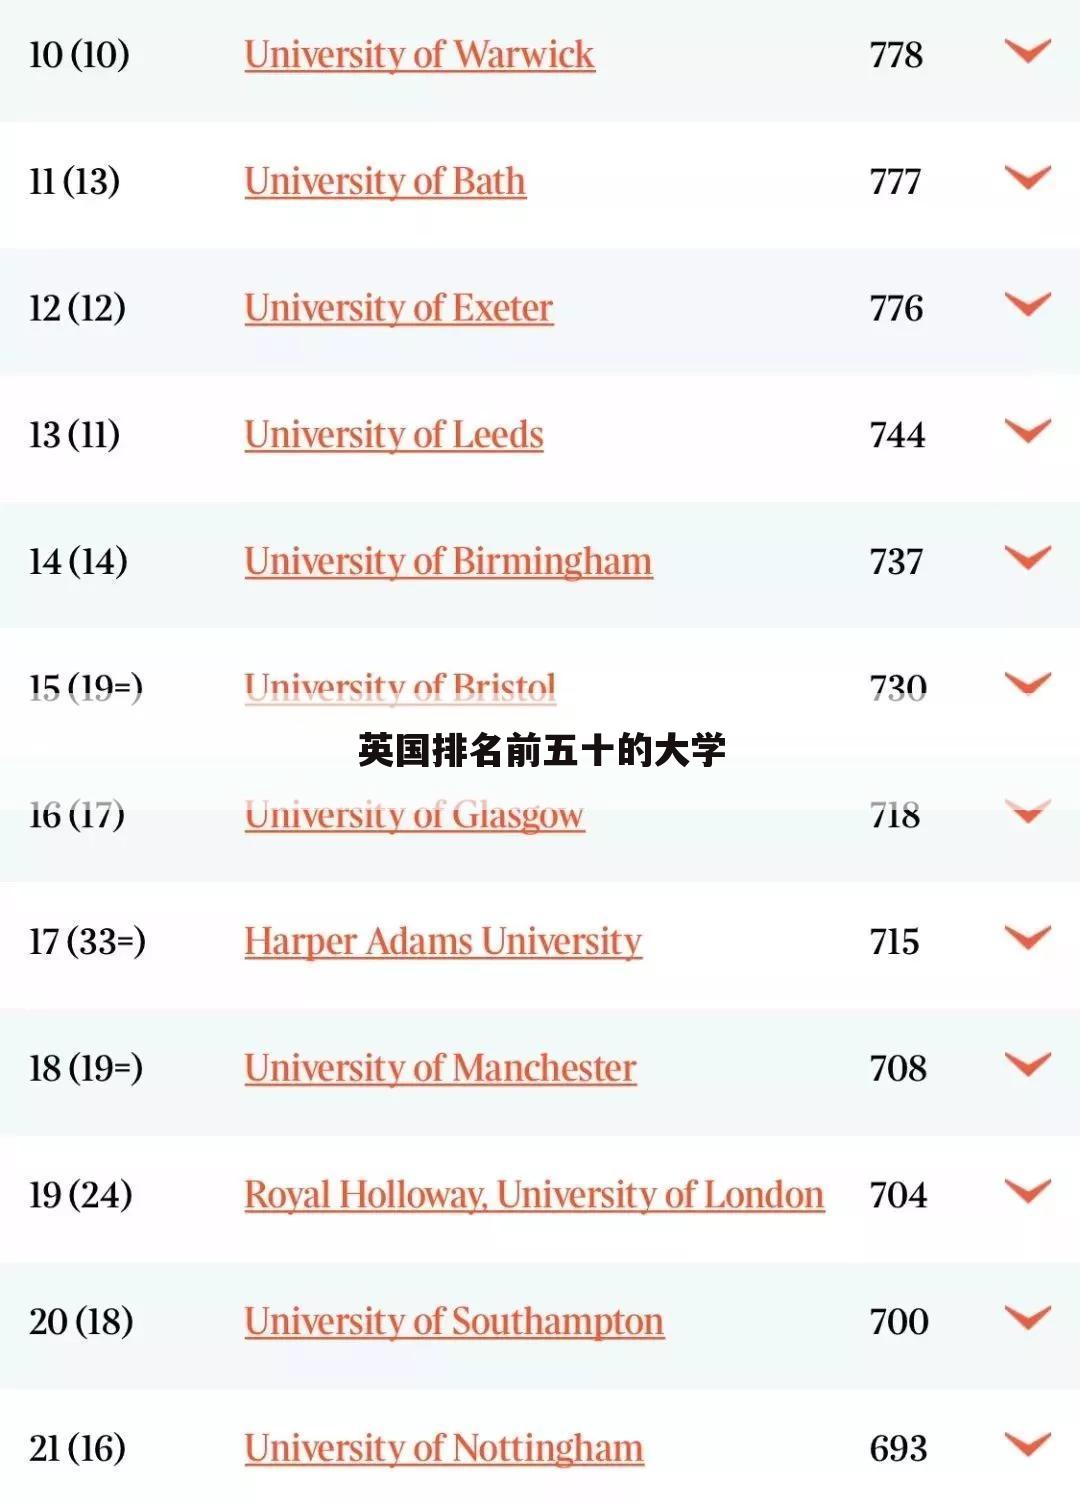 ﹝伯明翰大学世界排名﹞伯明翰大学世界排名2021最新排名